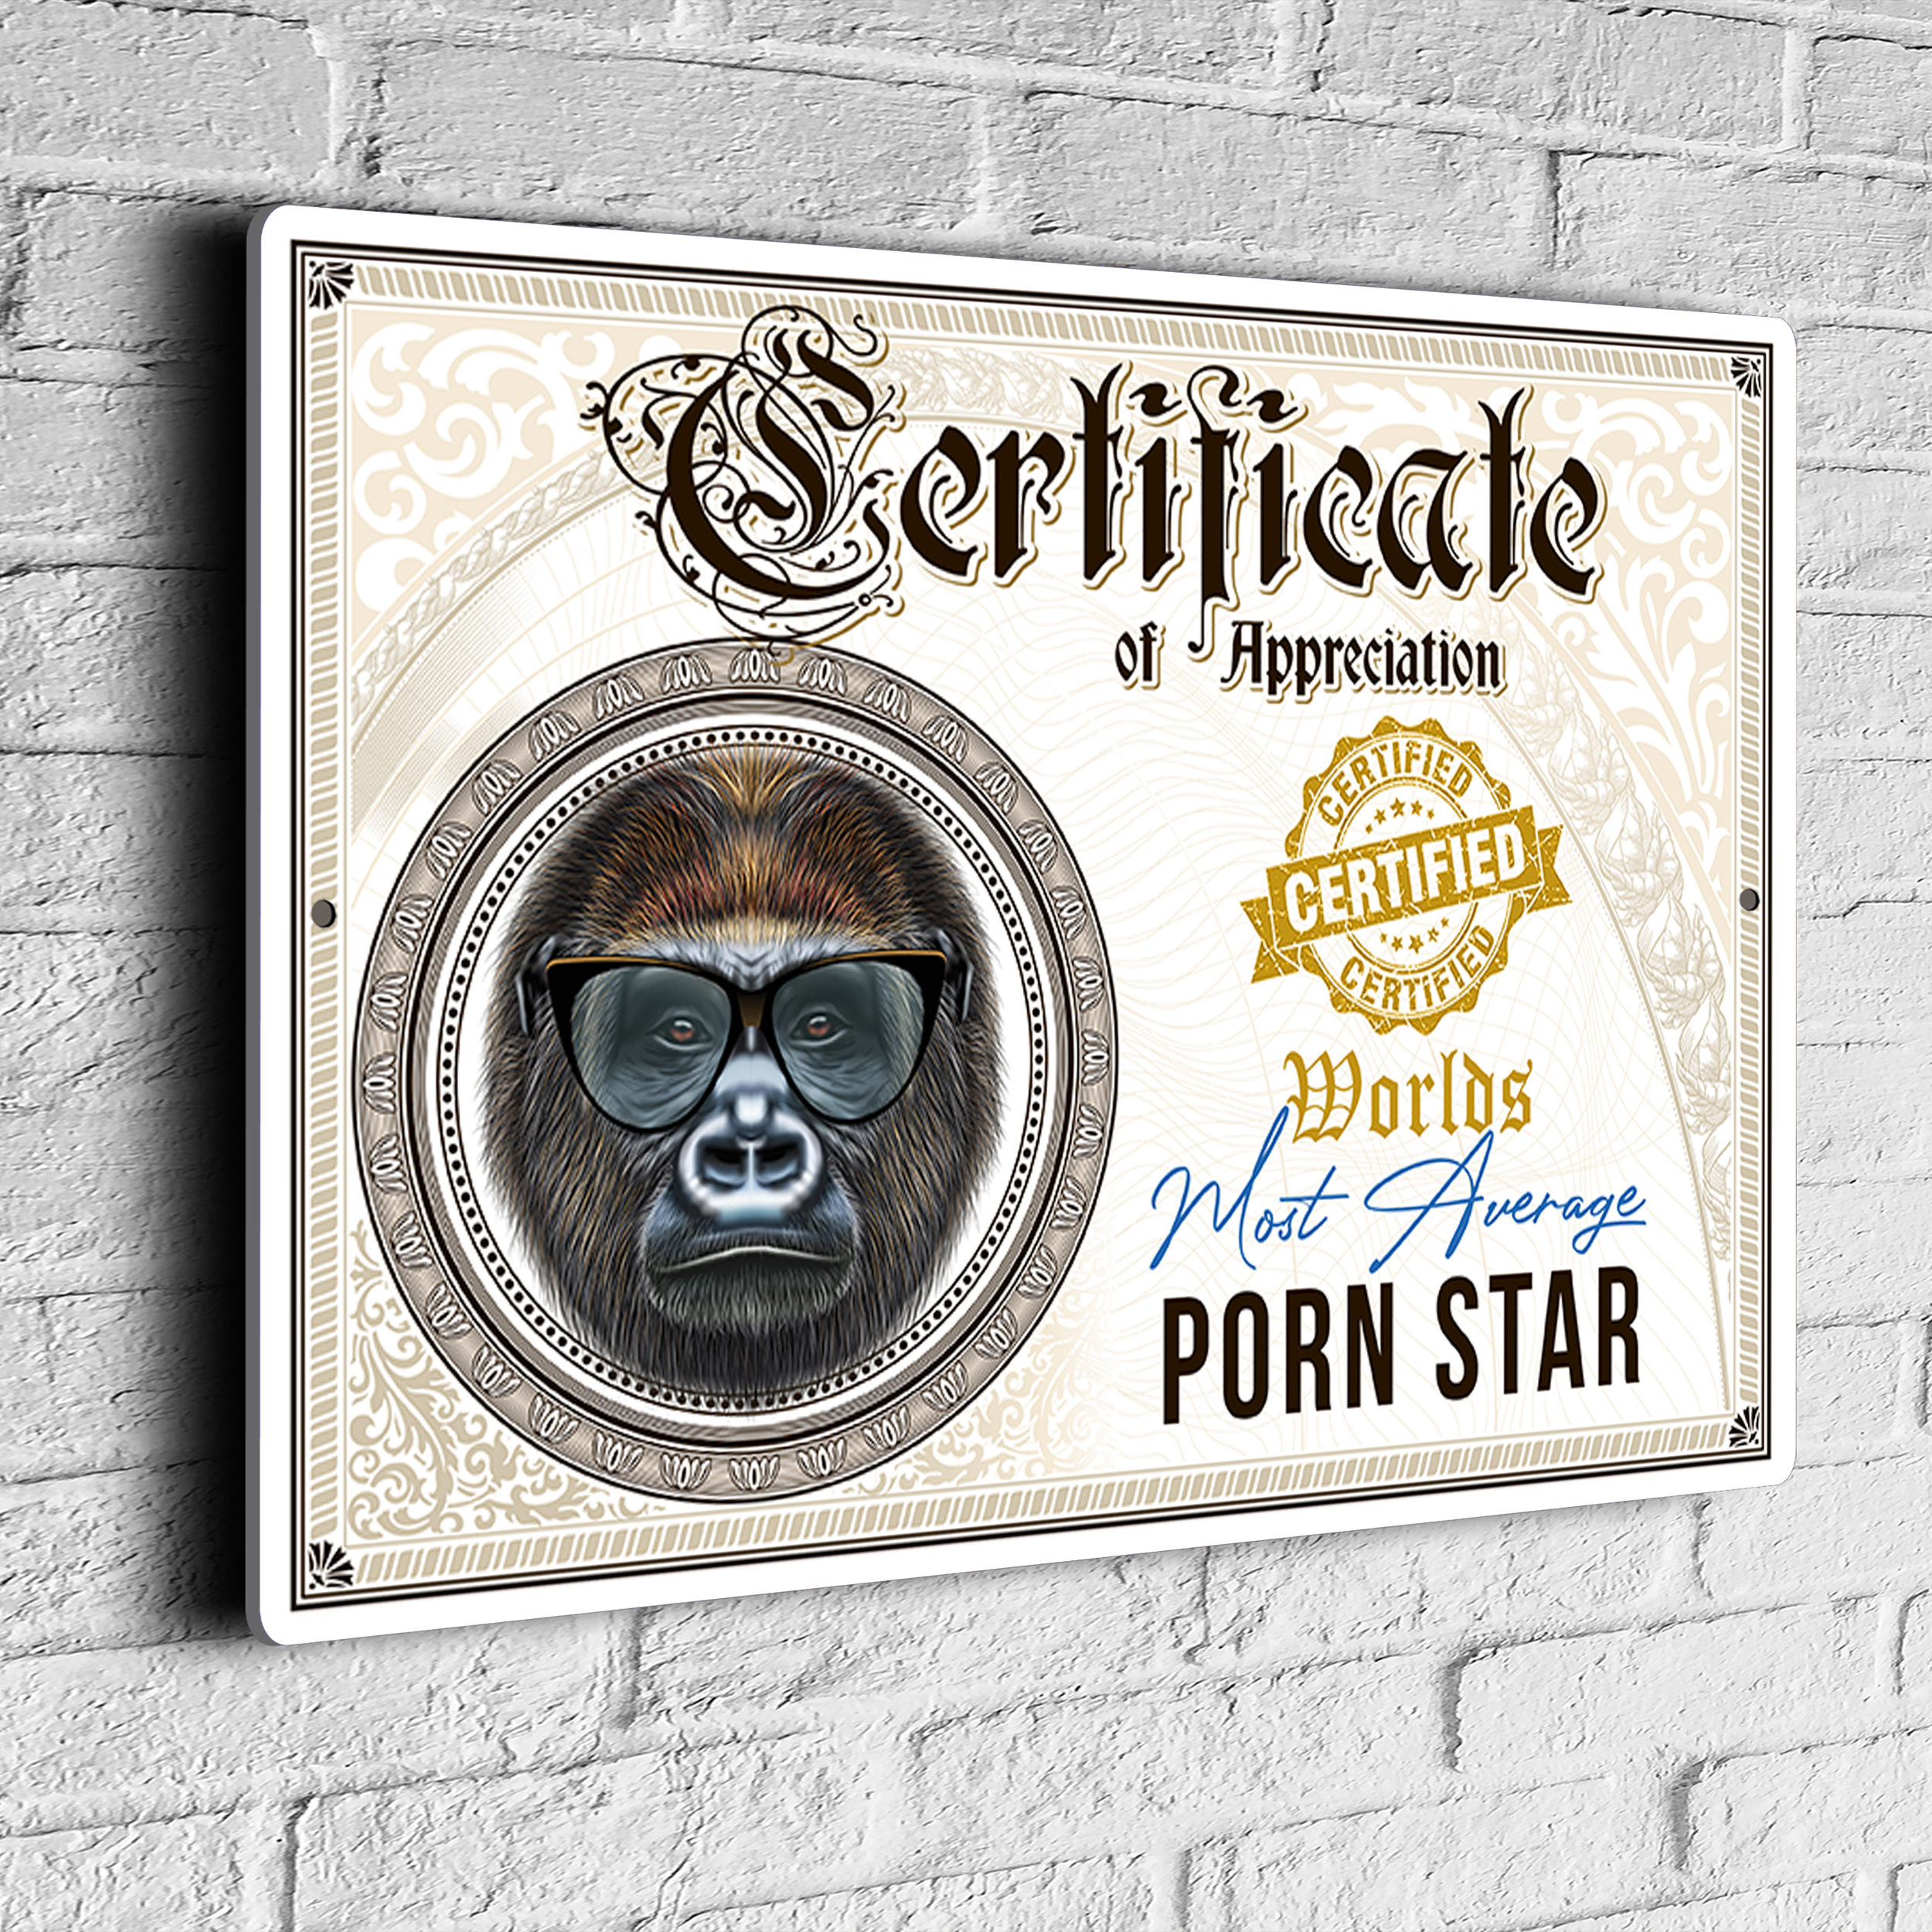 Fun Porn Star Certificate